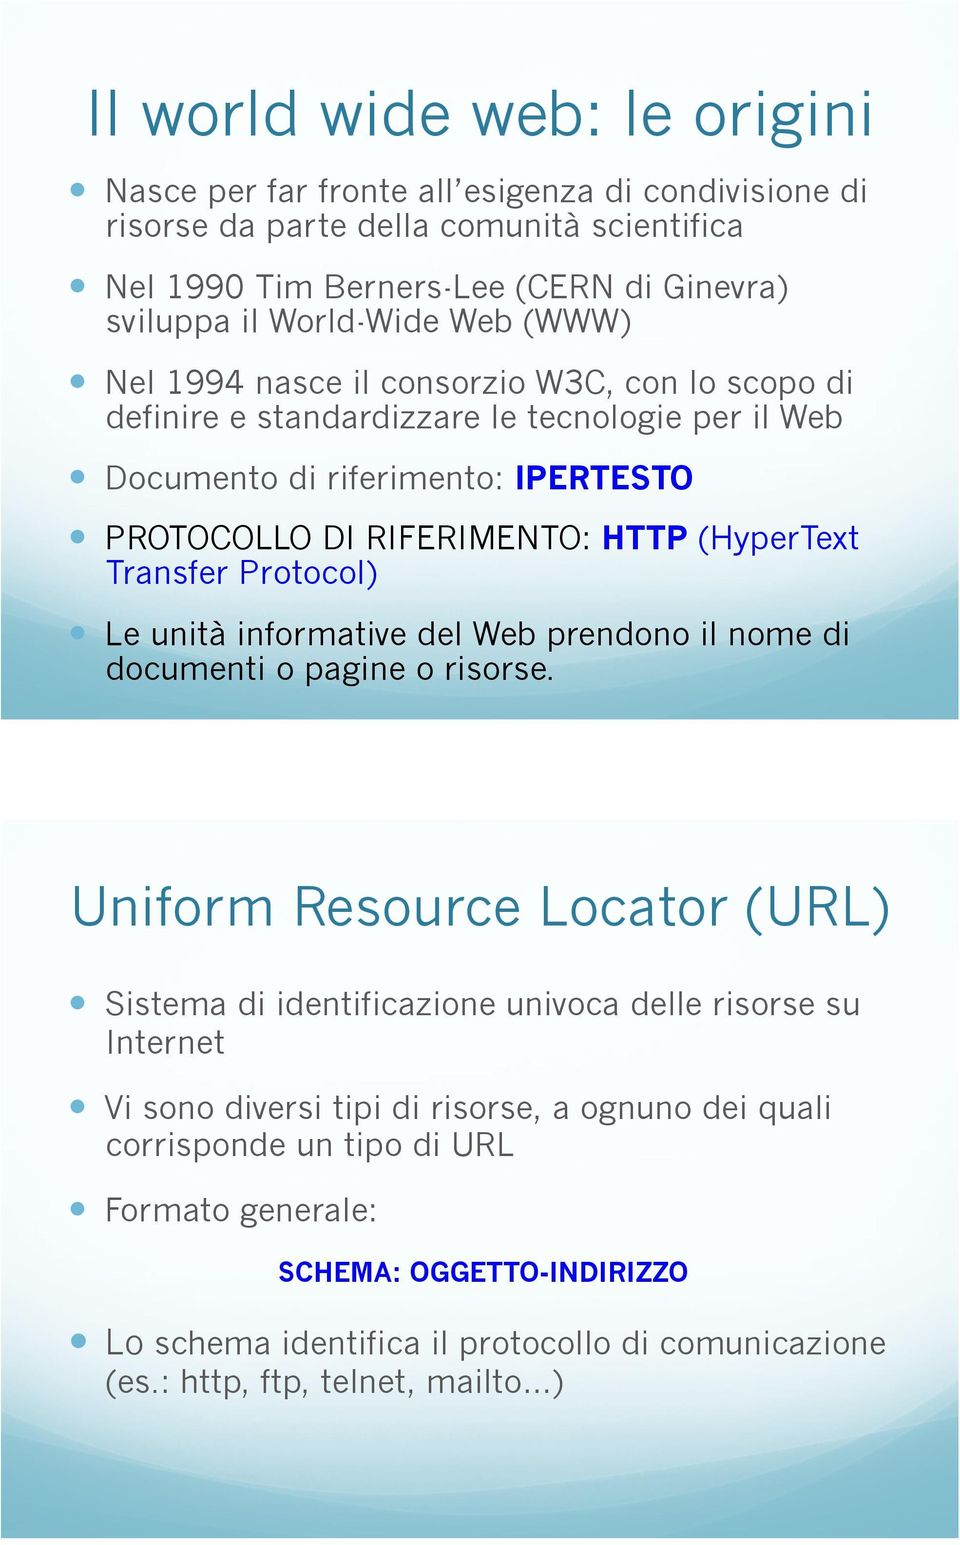 Documento di riferimento: IPERTESTO! PROTOCOLLO DI RIFERIMENTO: HTTP (HyperText Transfer Protocol)! Le unità informative del Web prendono il nome di documenti o pagine o risorse.